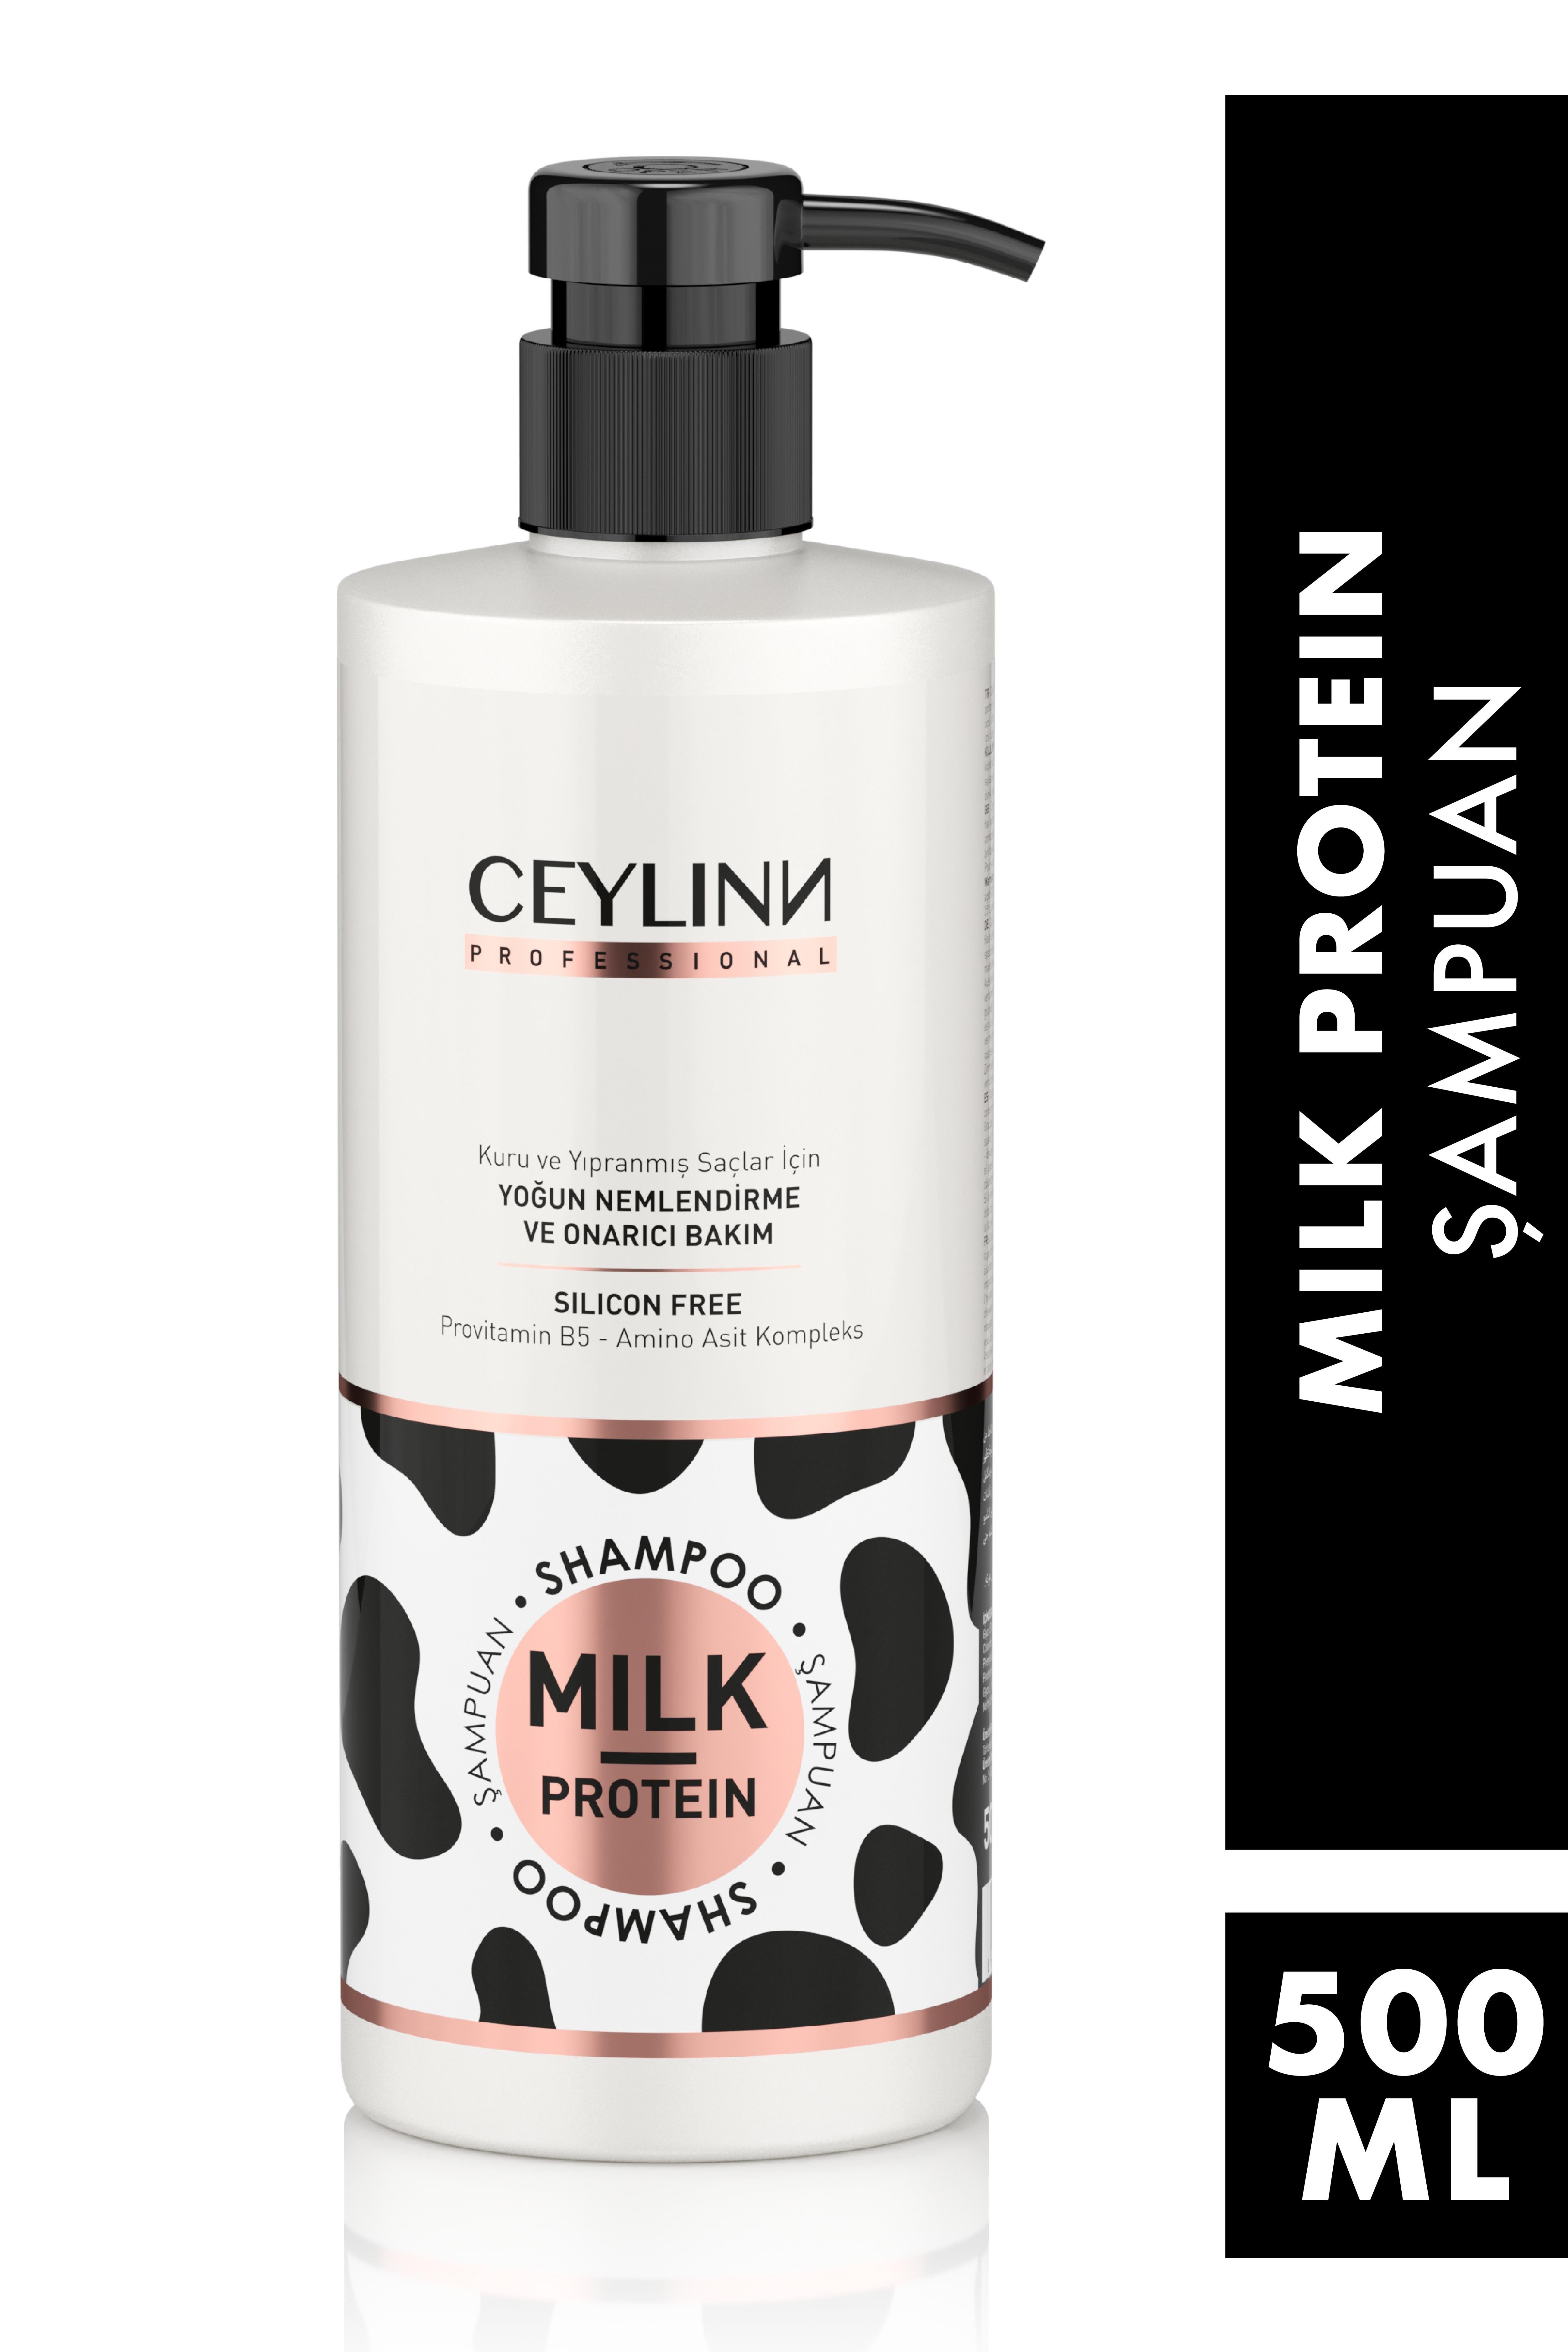 Ceylinn Milk Protein Şampuan 500 ML